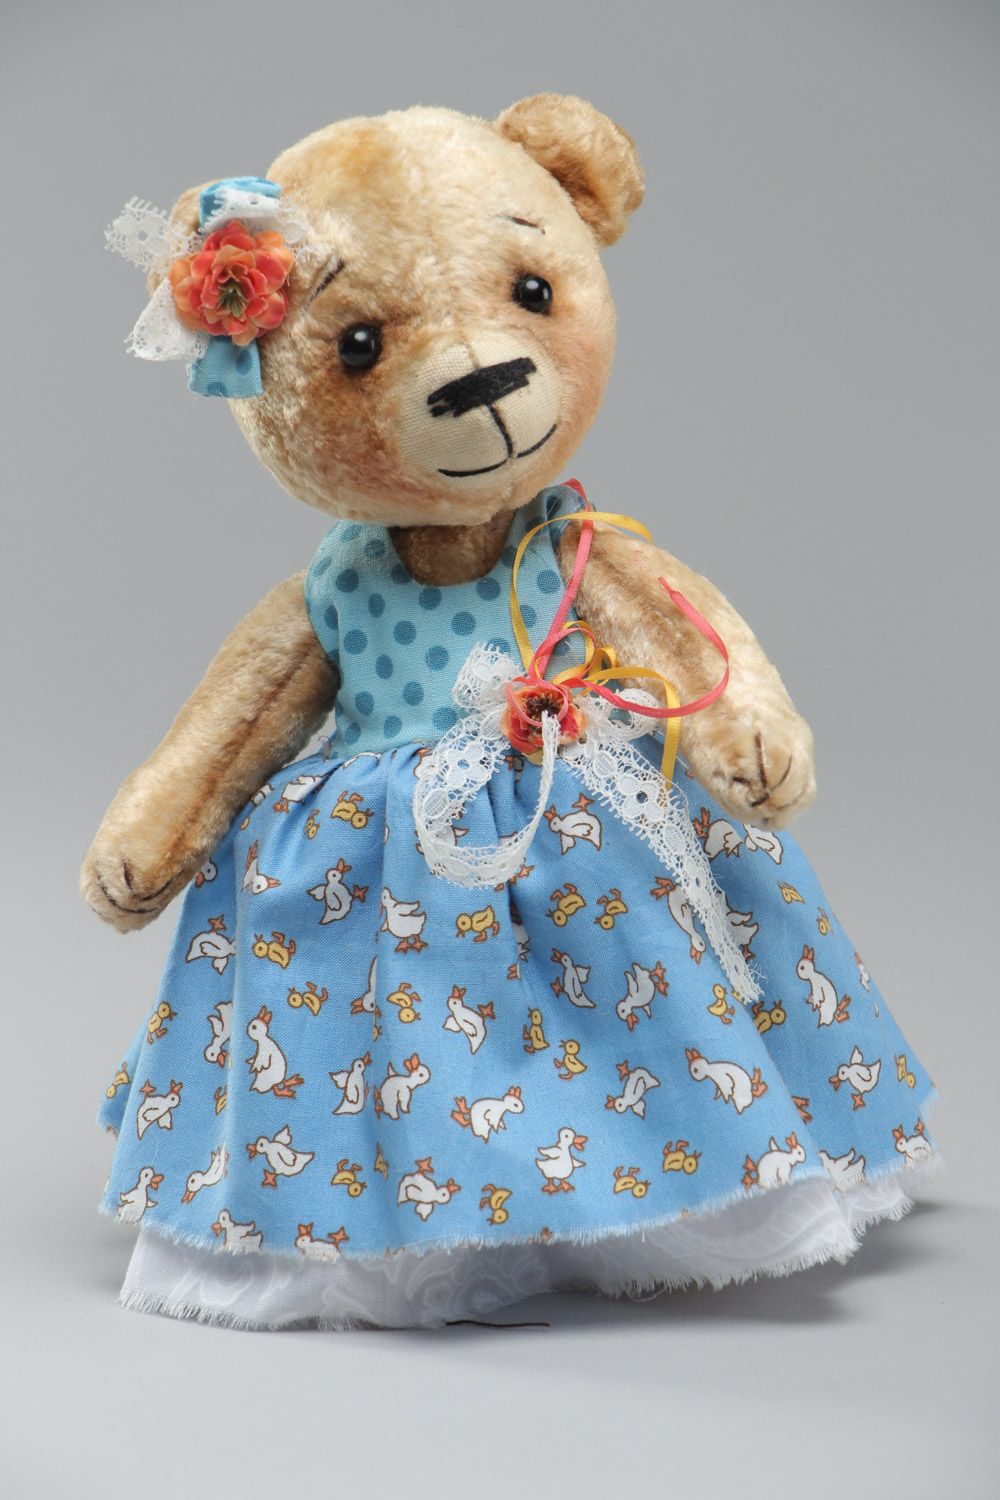 Joli jouet mou fait main ourson en robe peluche sympa cadeau pour enfant photo 2